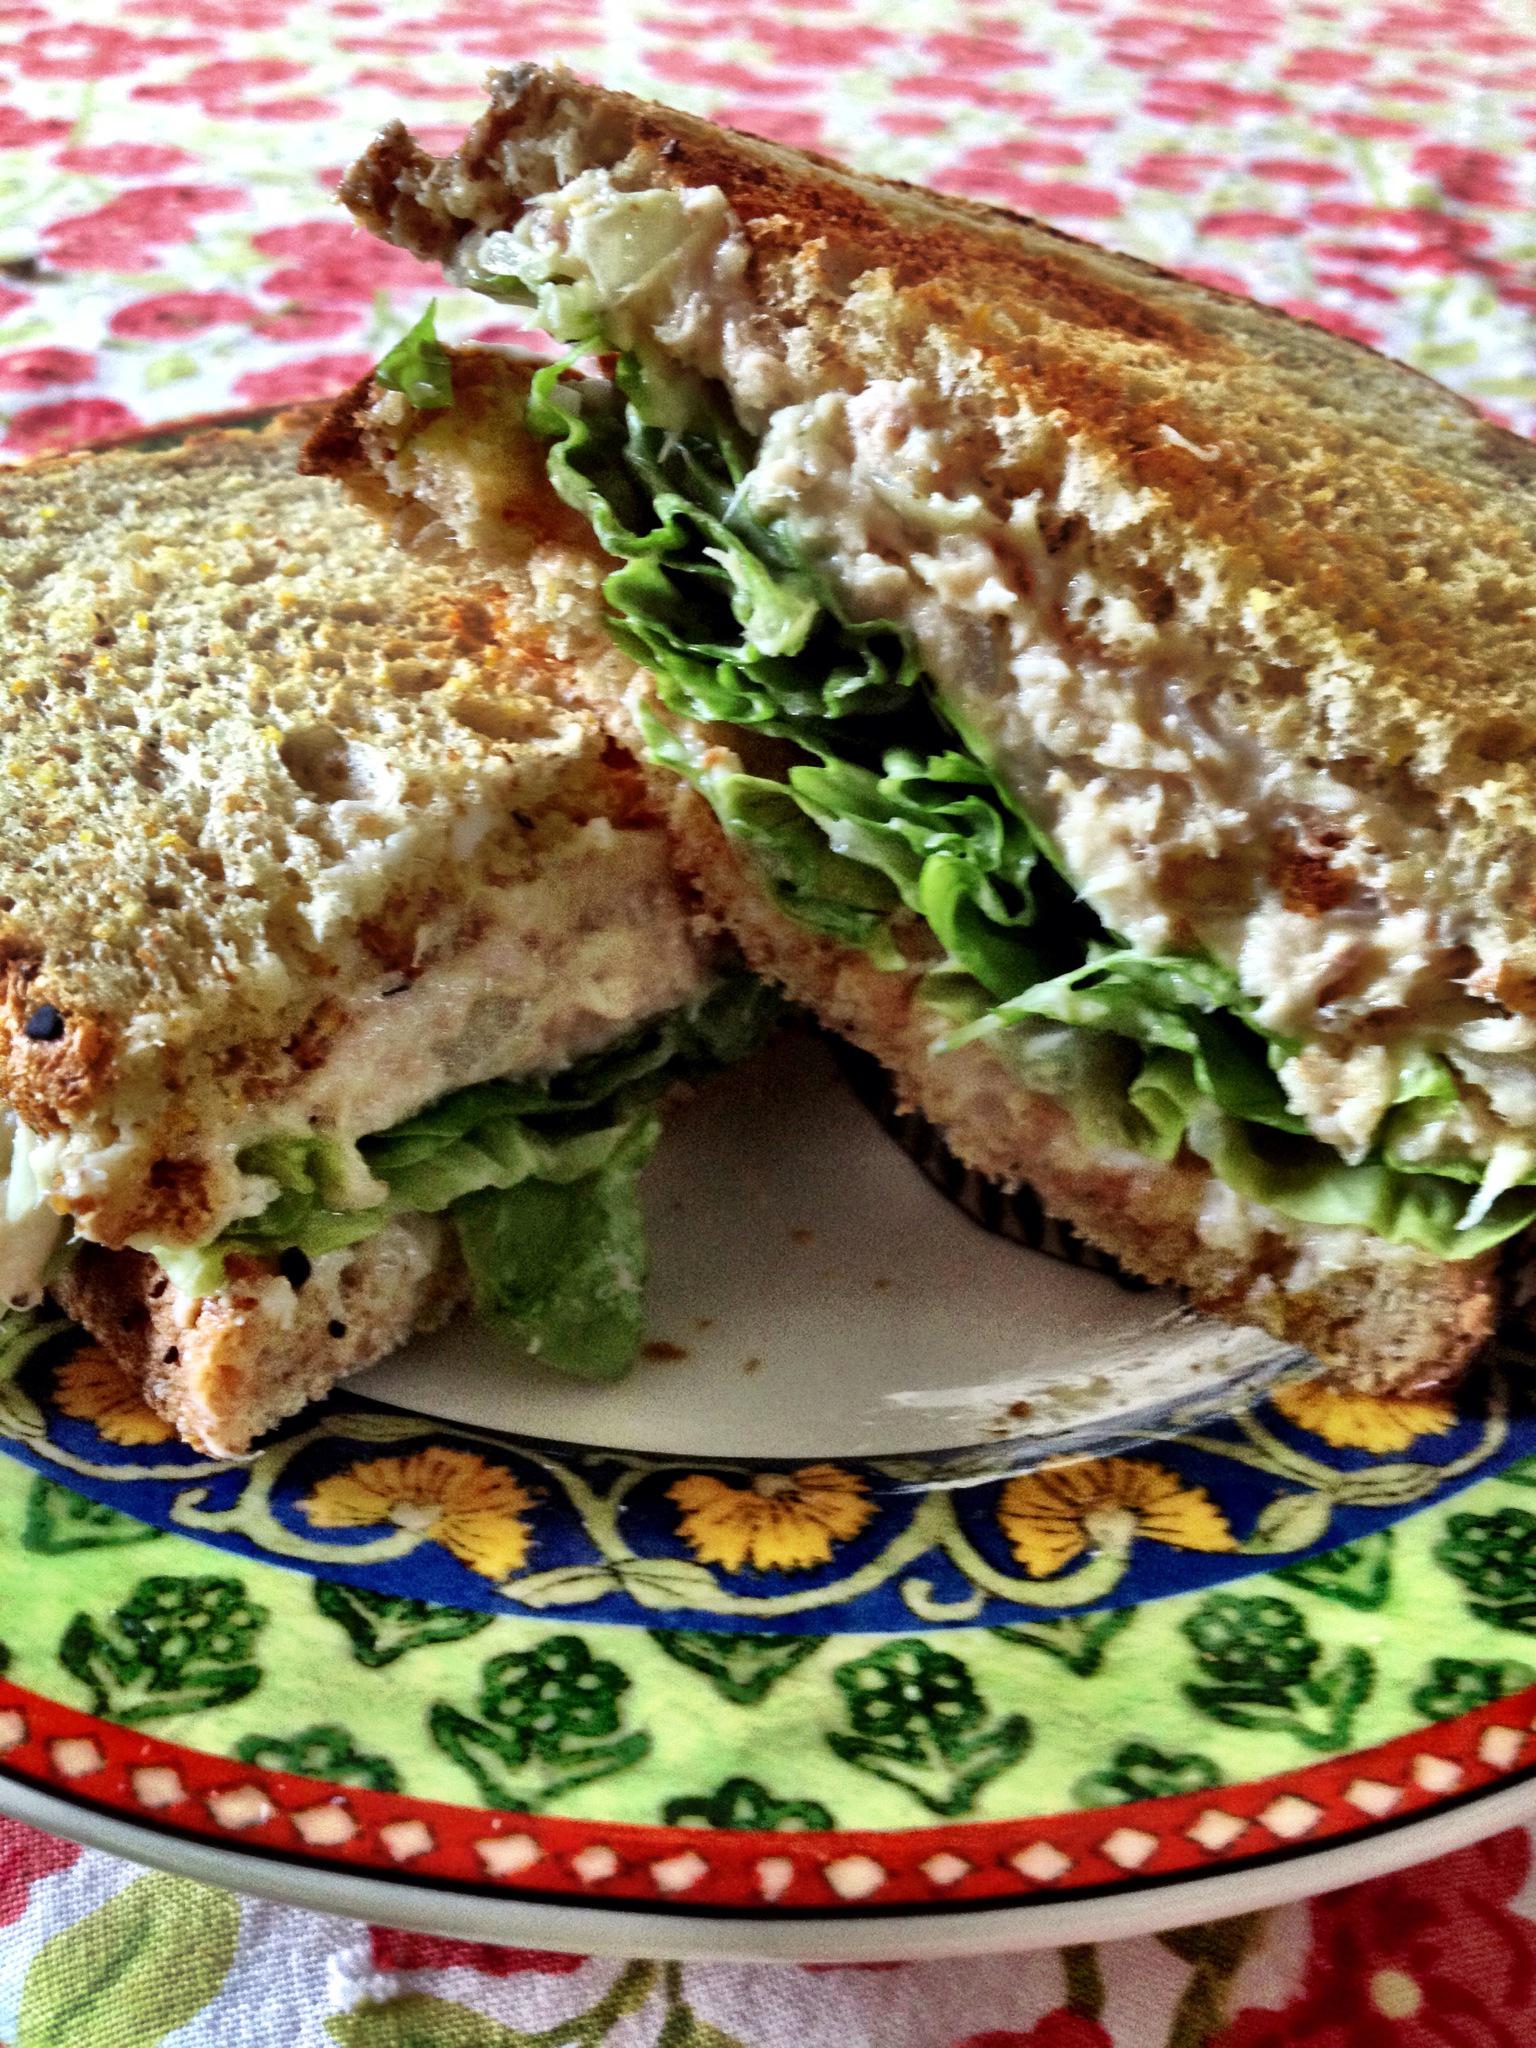 To tuna sandwich make how Classic Tuna